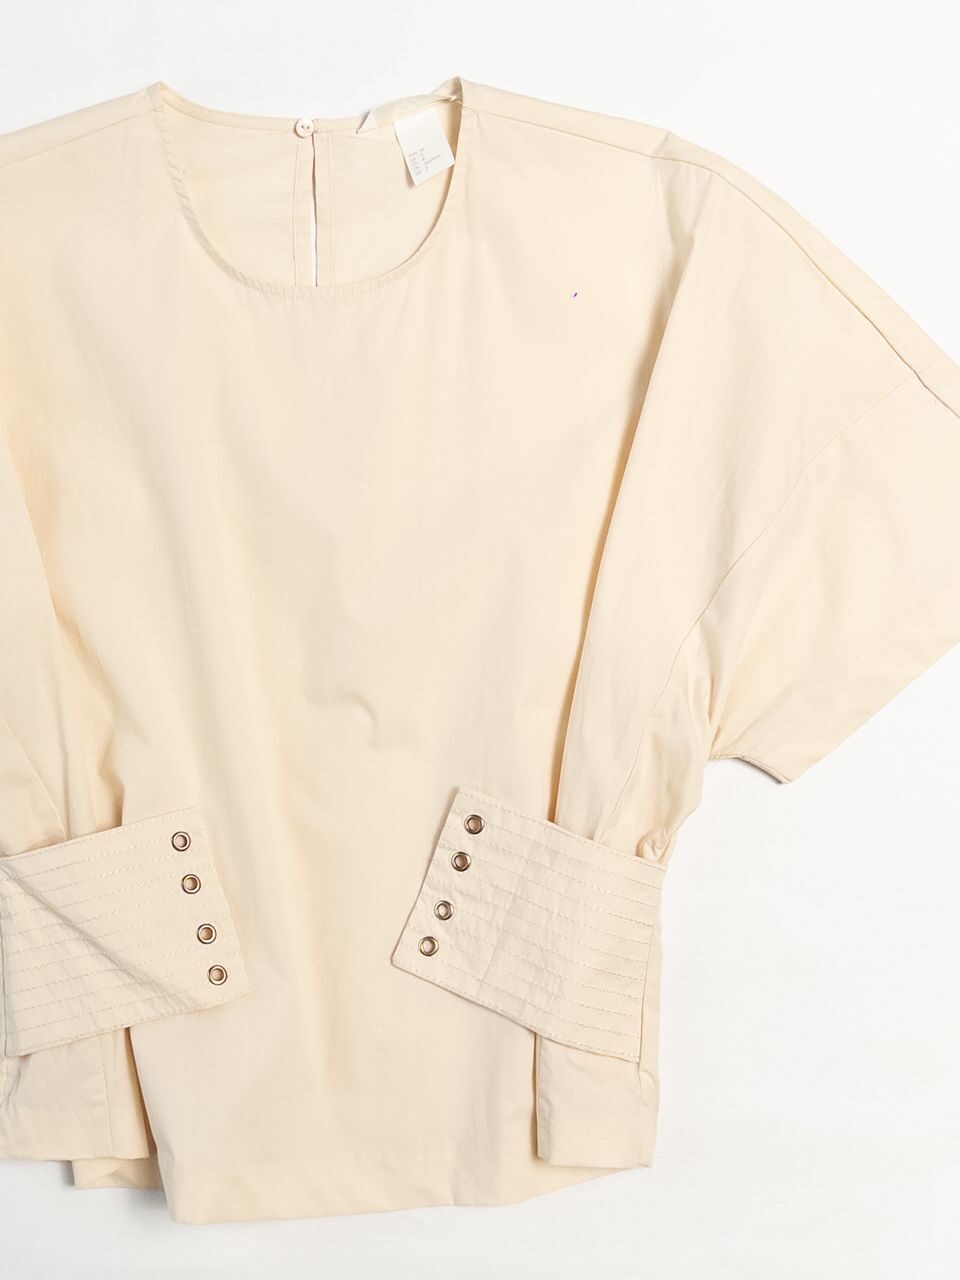 Блузка хлопчатобумажной ткани женская с поясом на шнуровке/на потайной пуговице сзади цвет молочный размер EUR 34 ( rus 40-42) H&M * нет шнурка